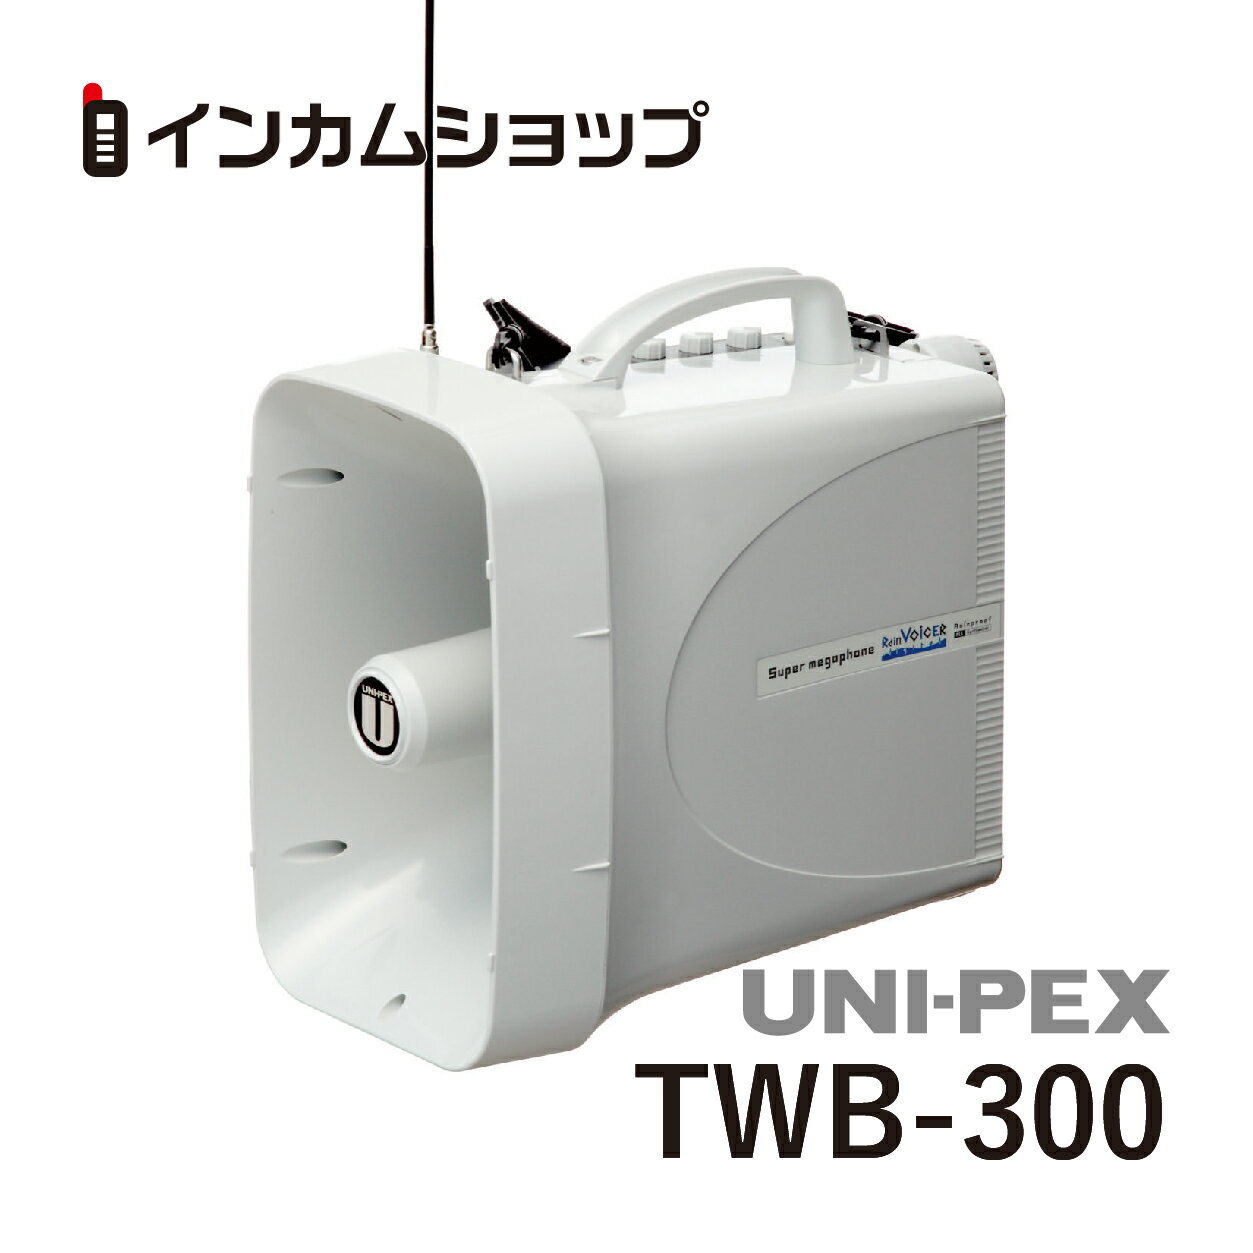 ユニペックス 防滴スーパーワイヤレスメガホンUNI-PEX TWB-300